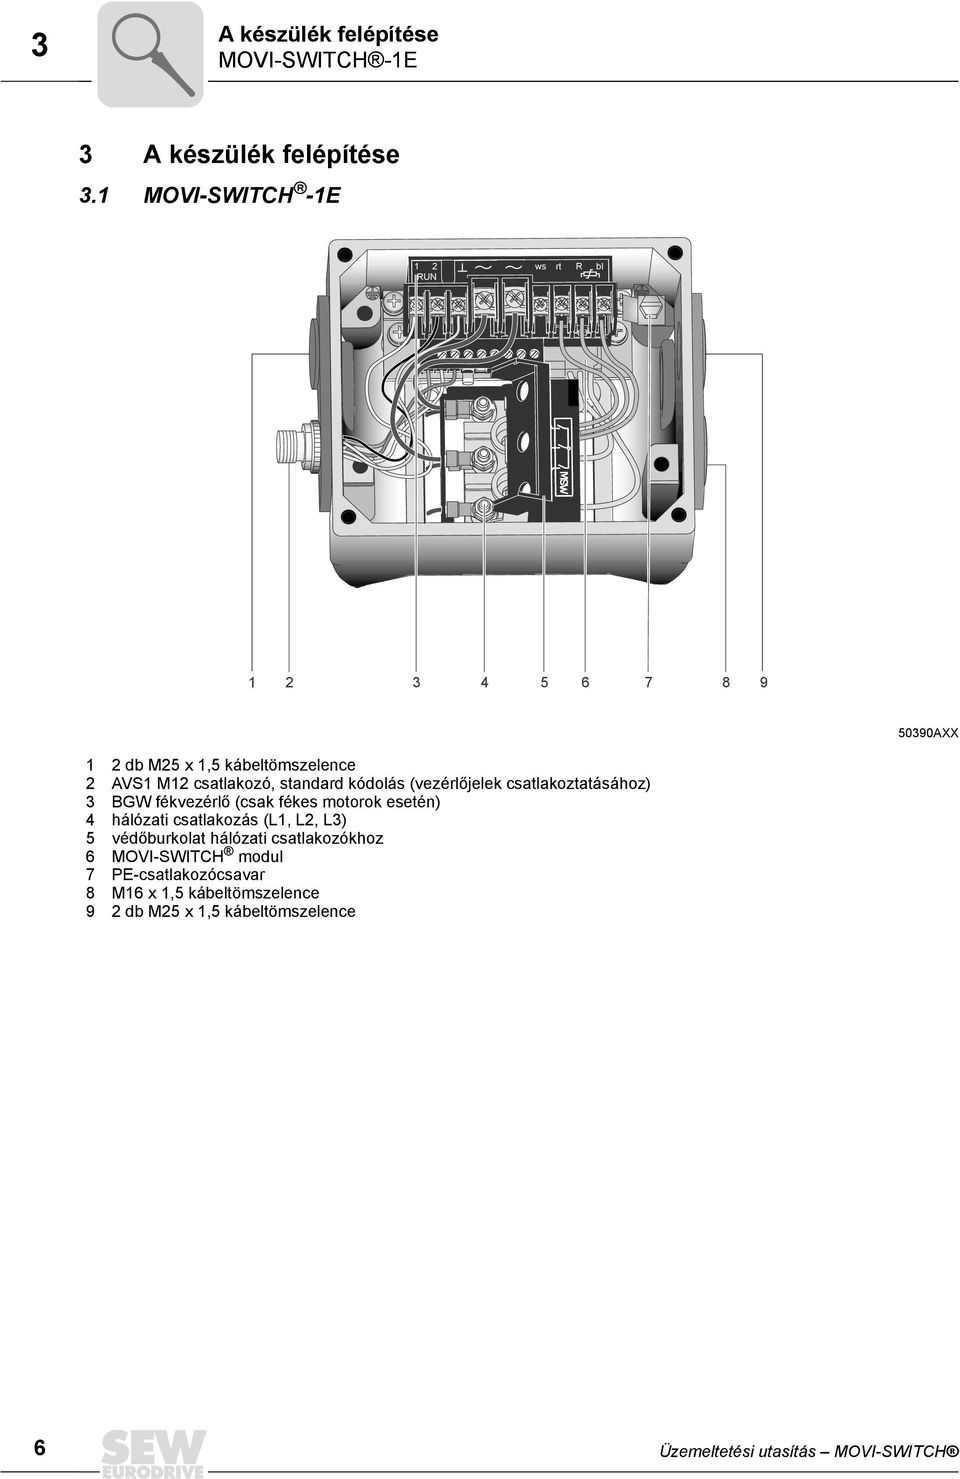 standard kódolás (vezérlőjelek csatlakoztatásához) 3 BGW fékvezérlő (csak fékes motorok esetén) 4 hálózati csatlakozás (L1,